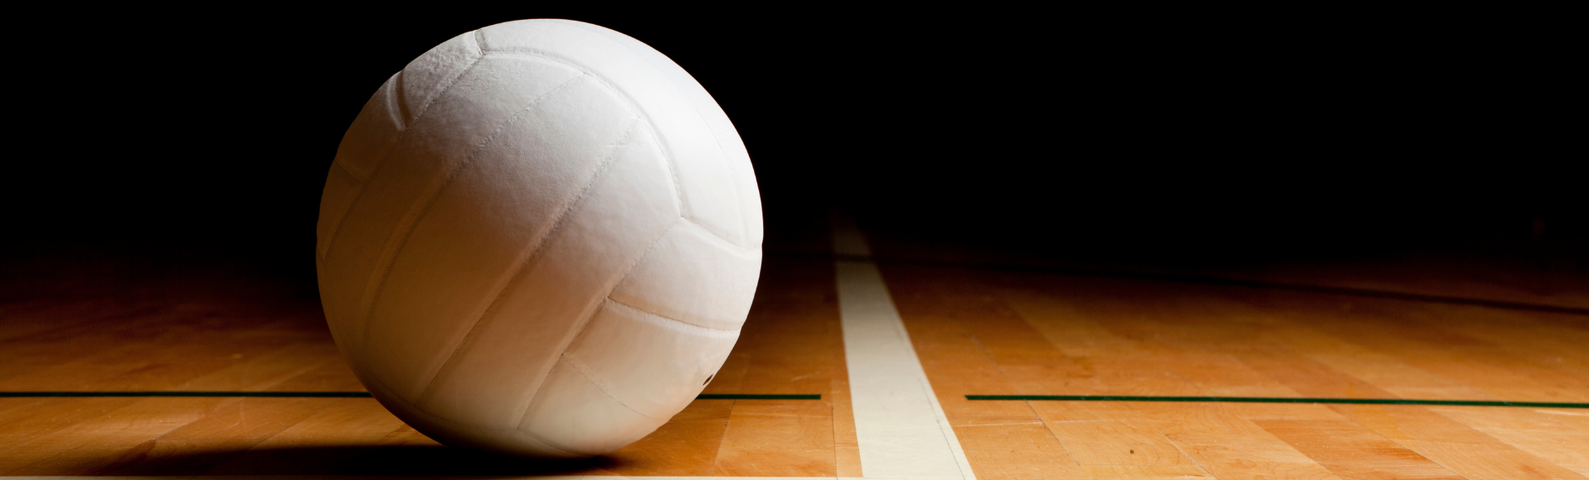 White volleyball on a dark hardwood court.